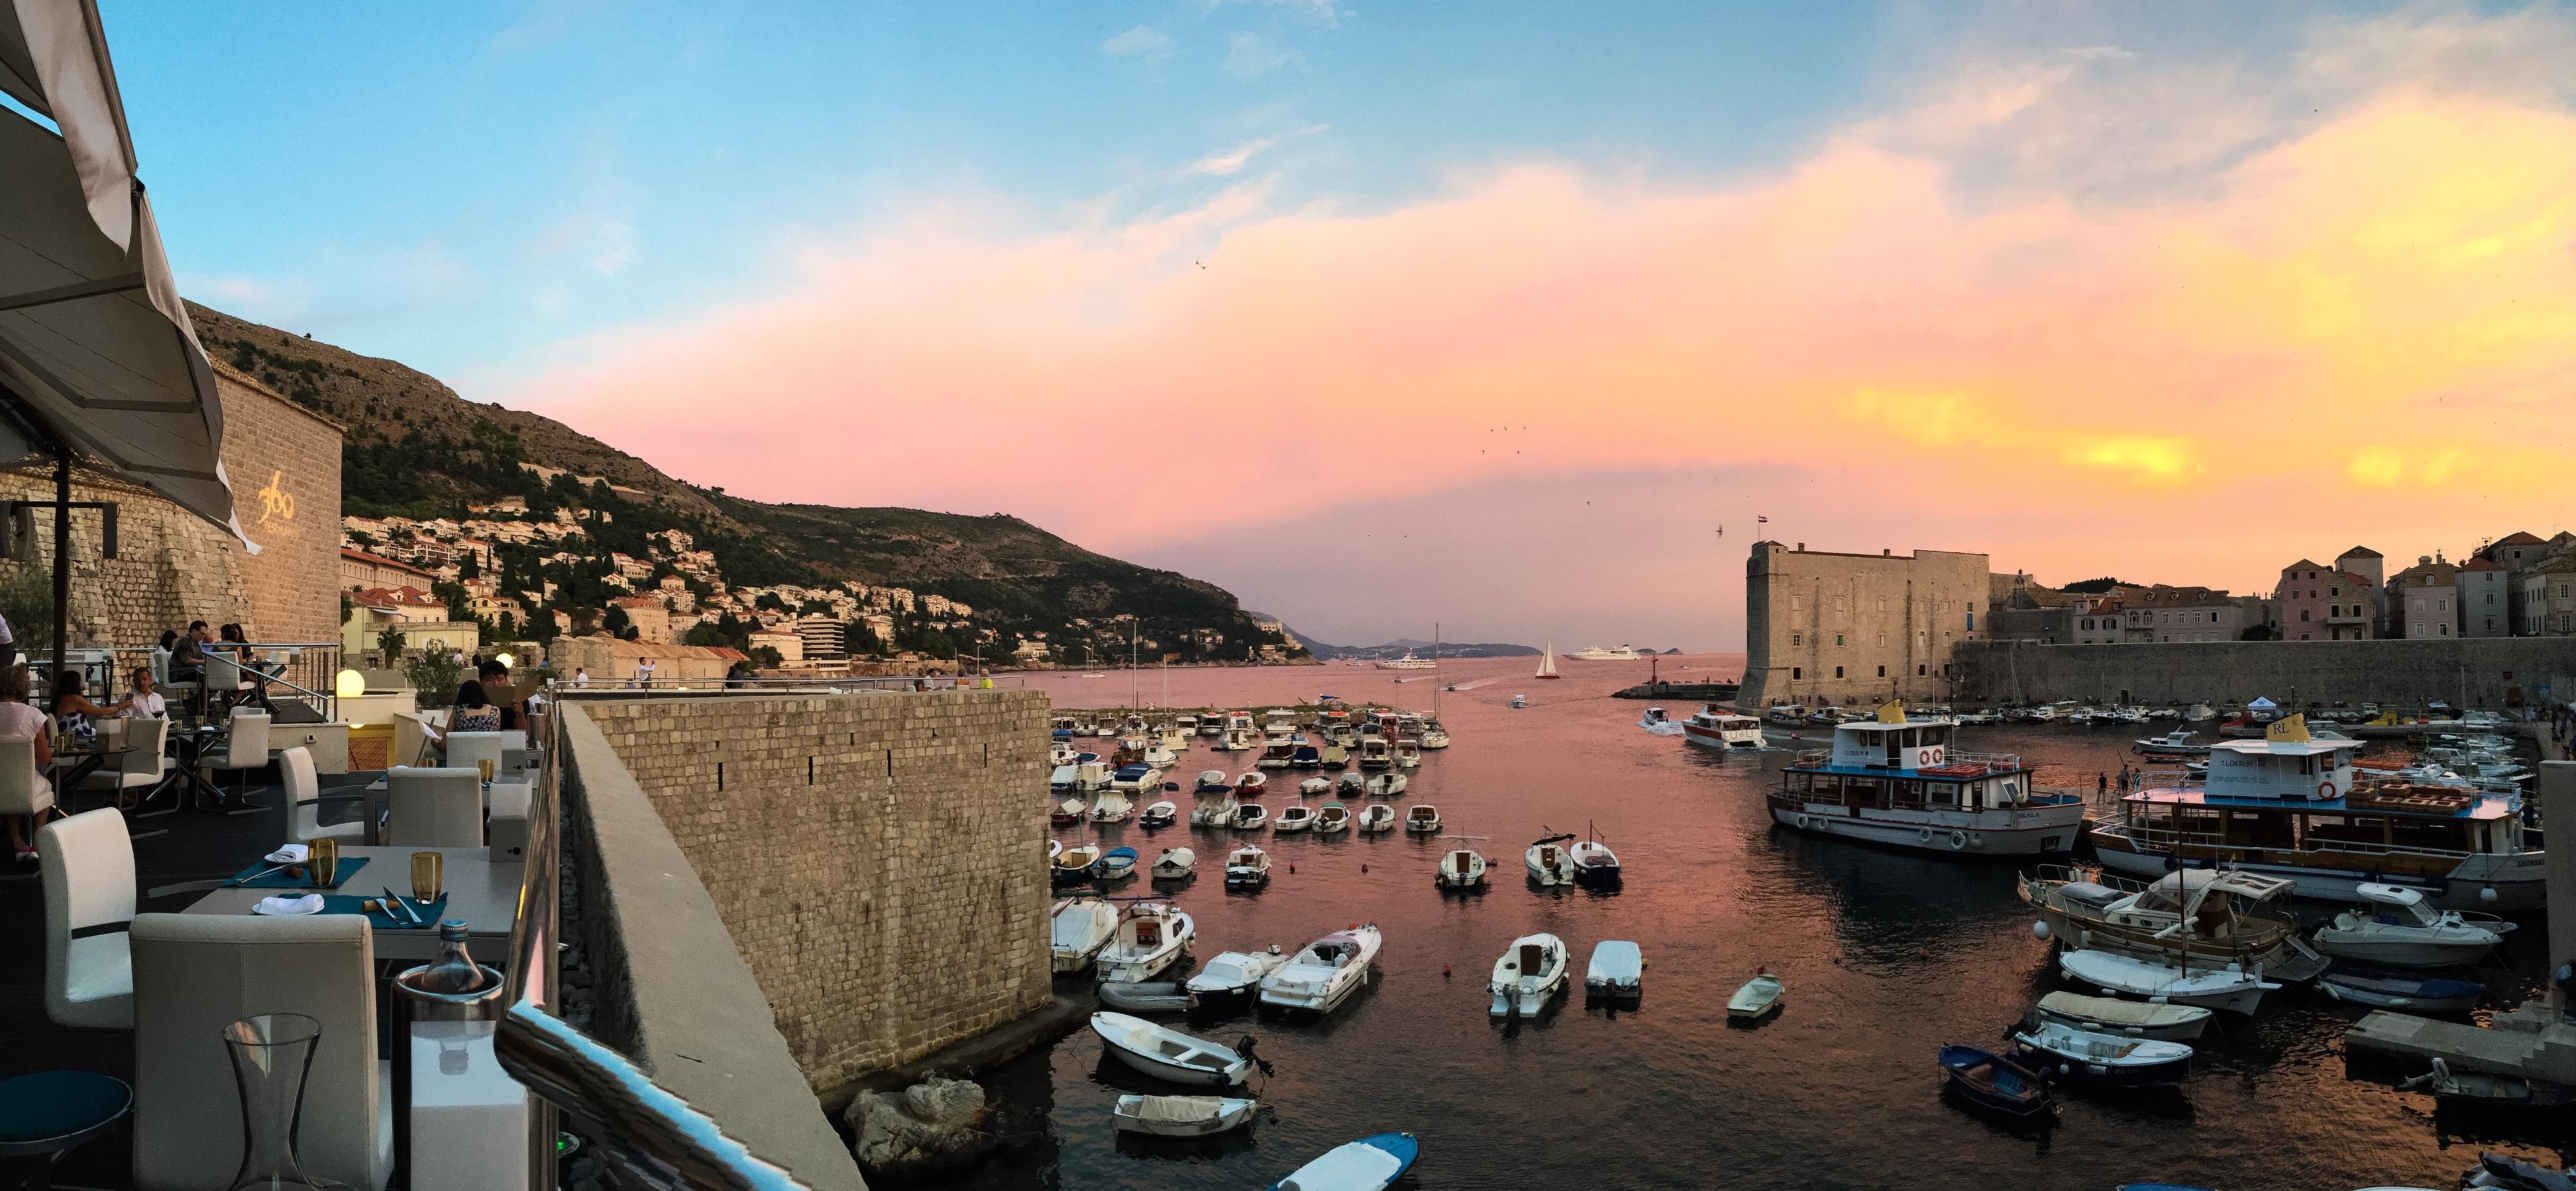 Blick vom Restaurant auf den Sonnenuntergang und eine dalmatische Marina mit Segelyachten und Booten